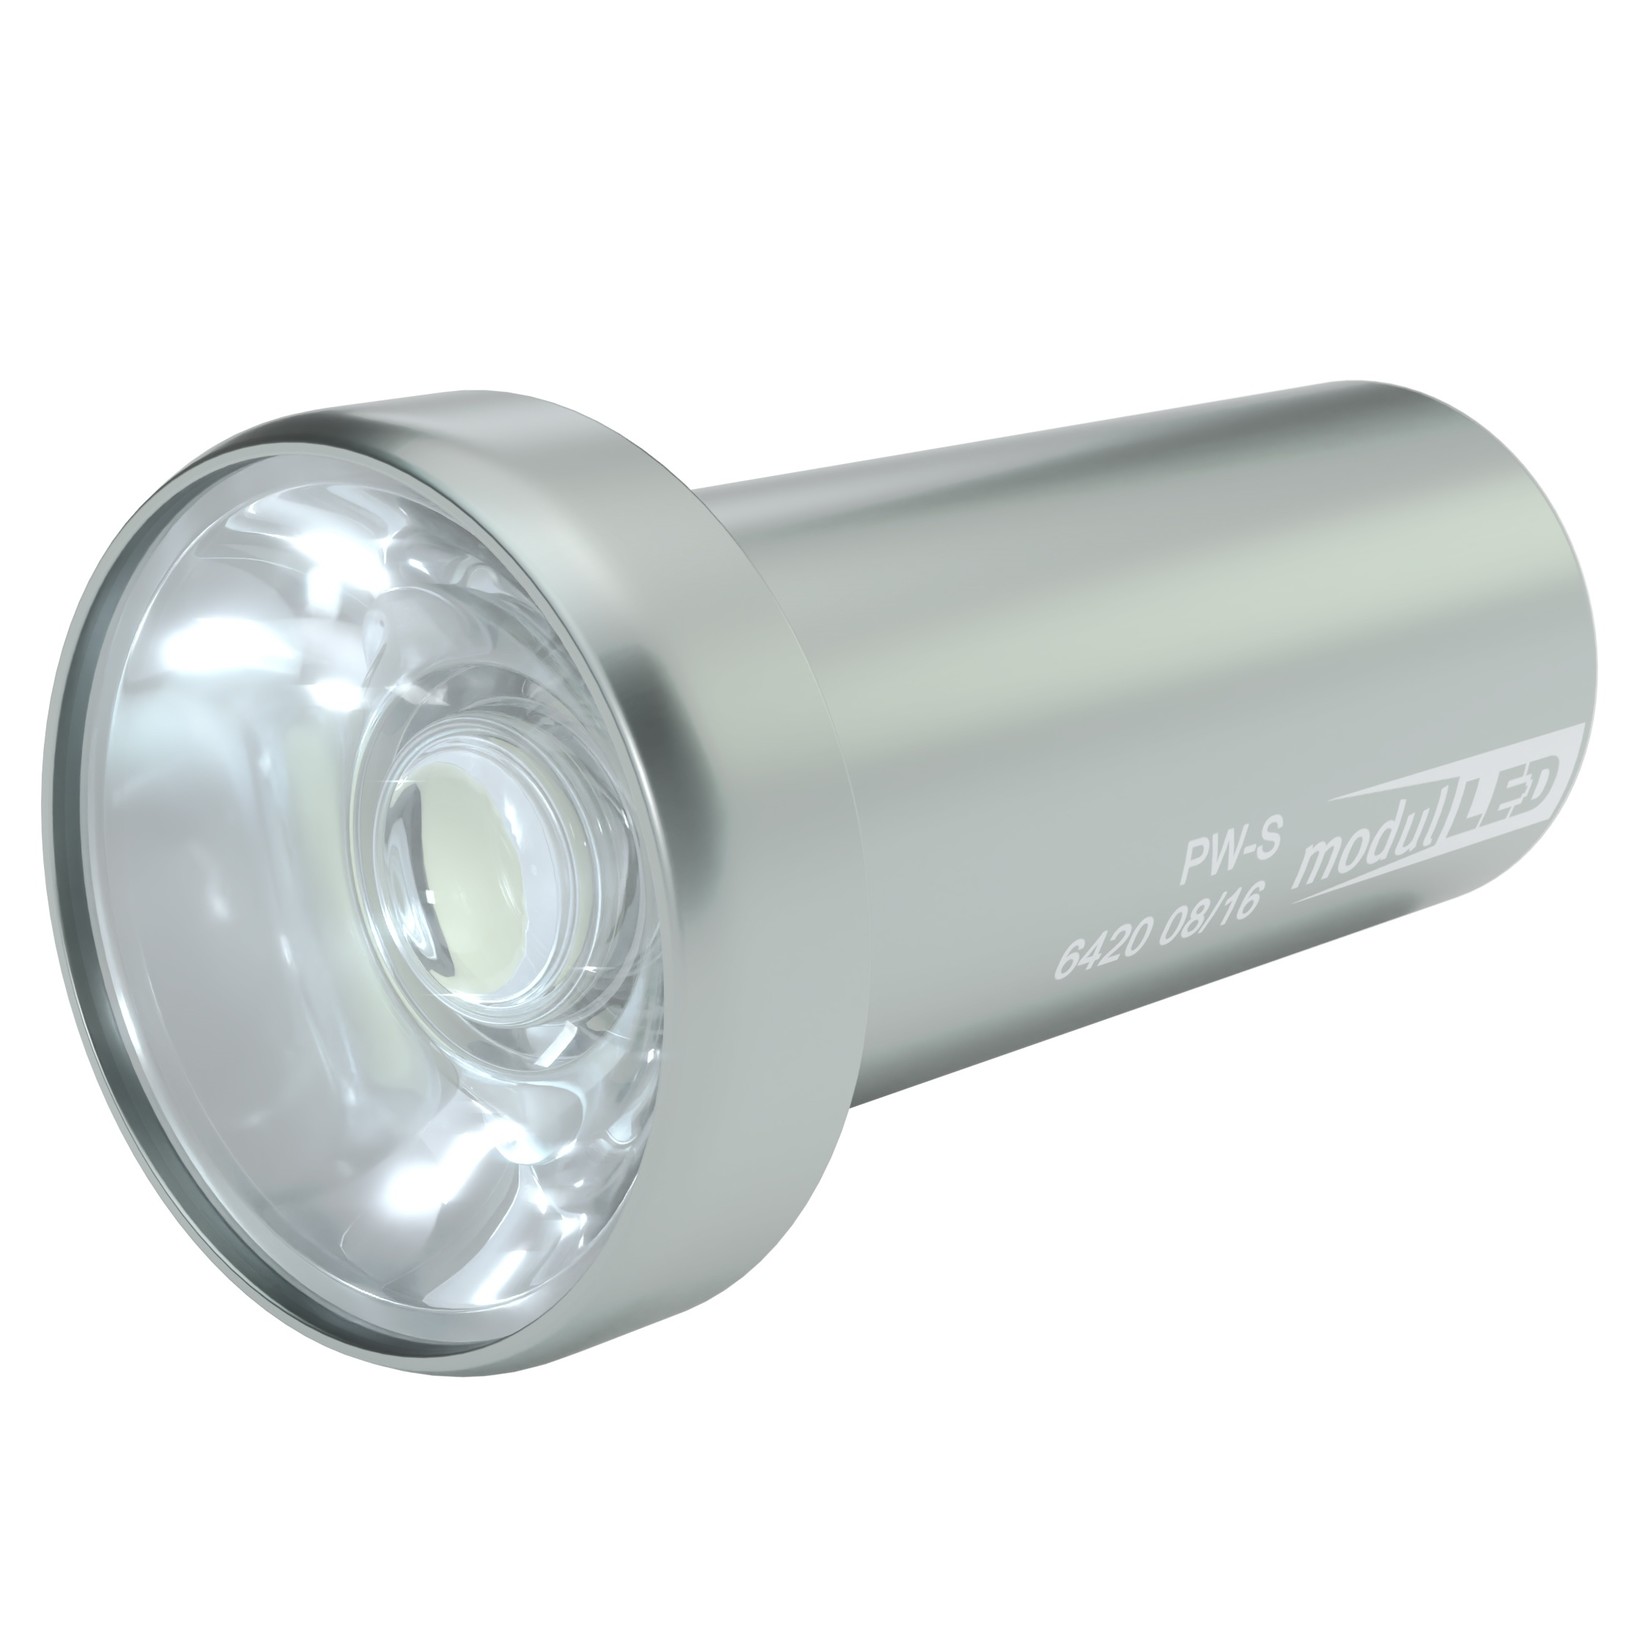 LED-Auflicht für 21 mm wechselbare LED-Module, zweiarmig mit Schutzglas